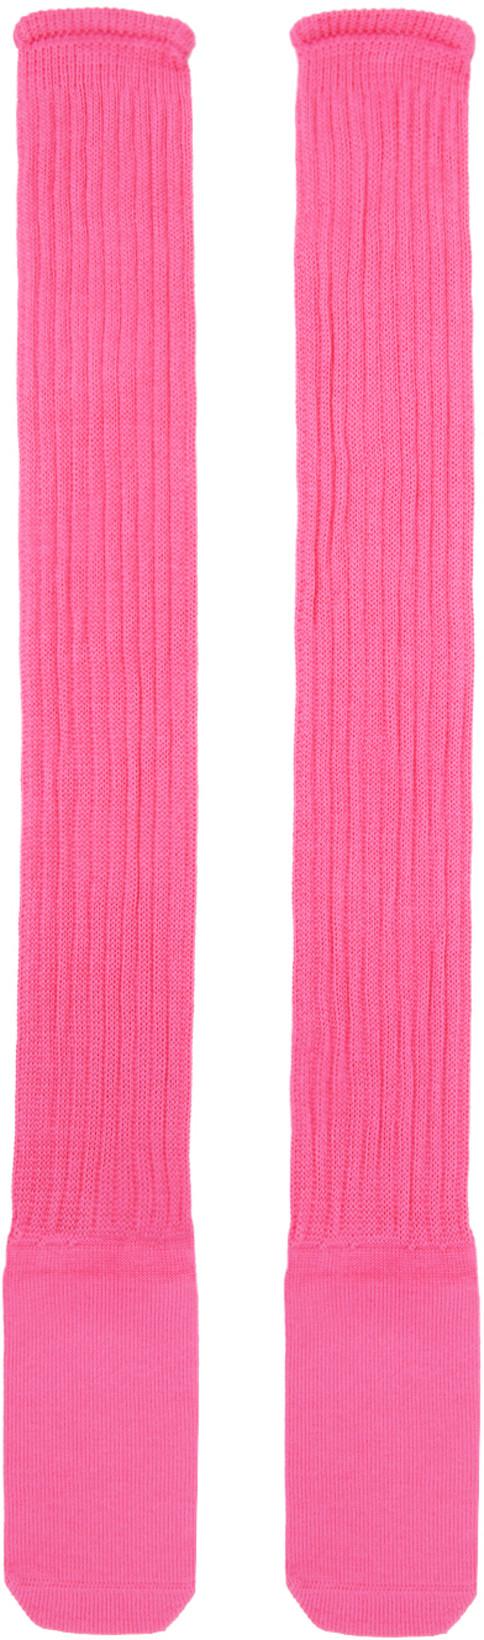 Pink Cotton Socks by BERNHARD WILLHELM